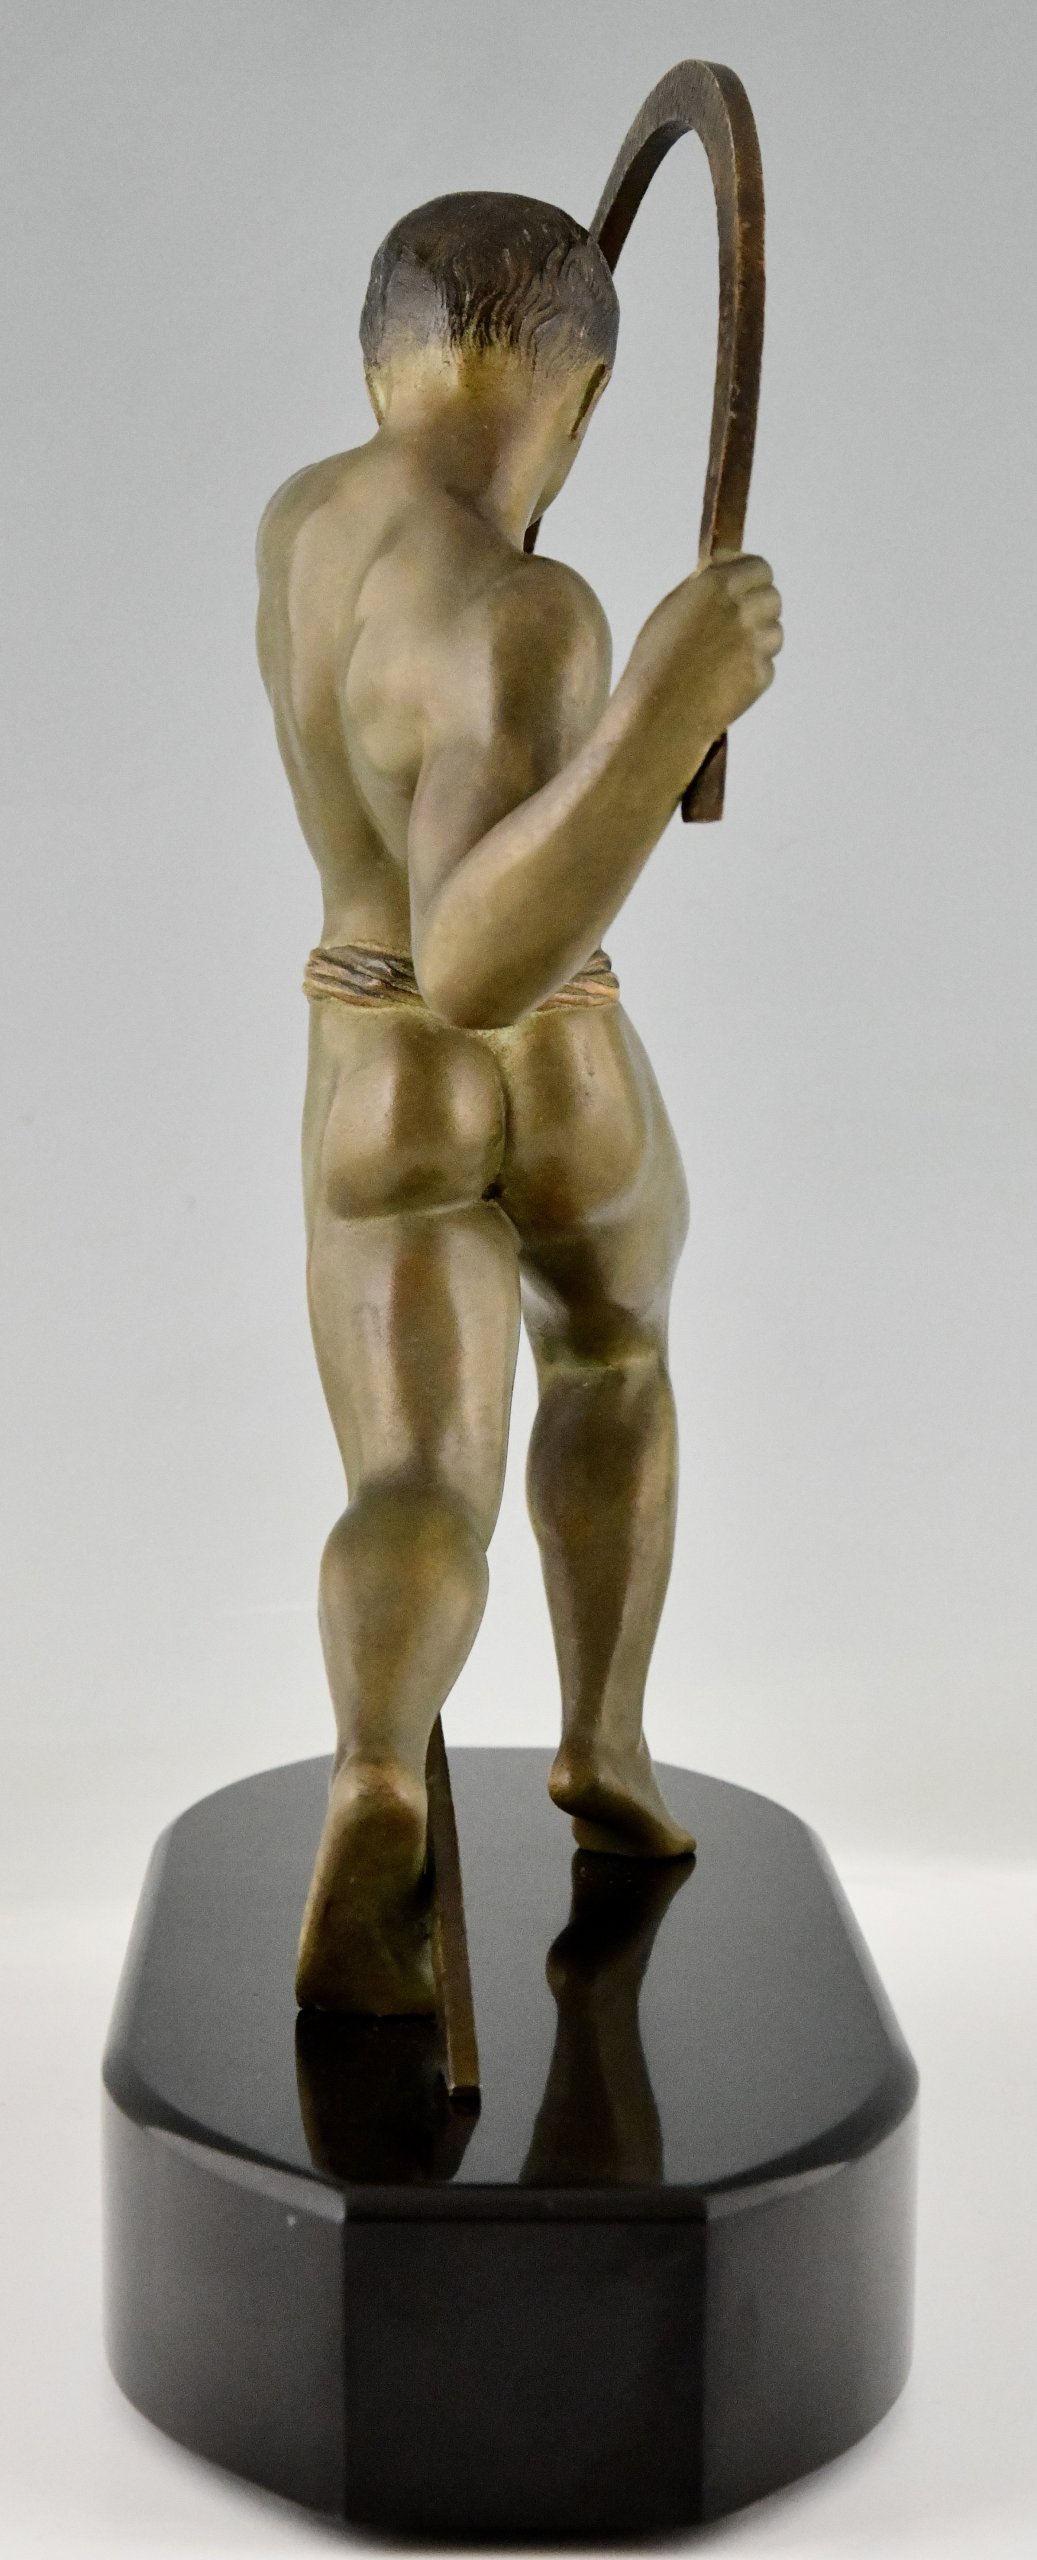 Art Deco sculpture of an athlete.